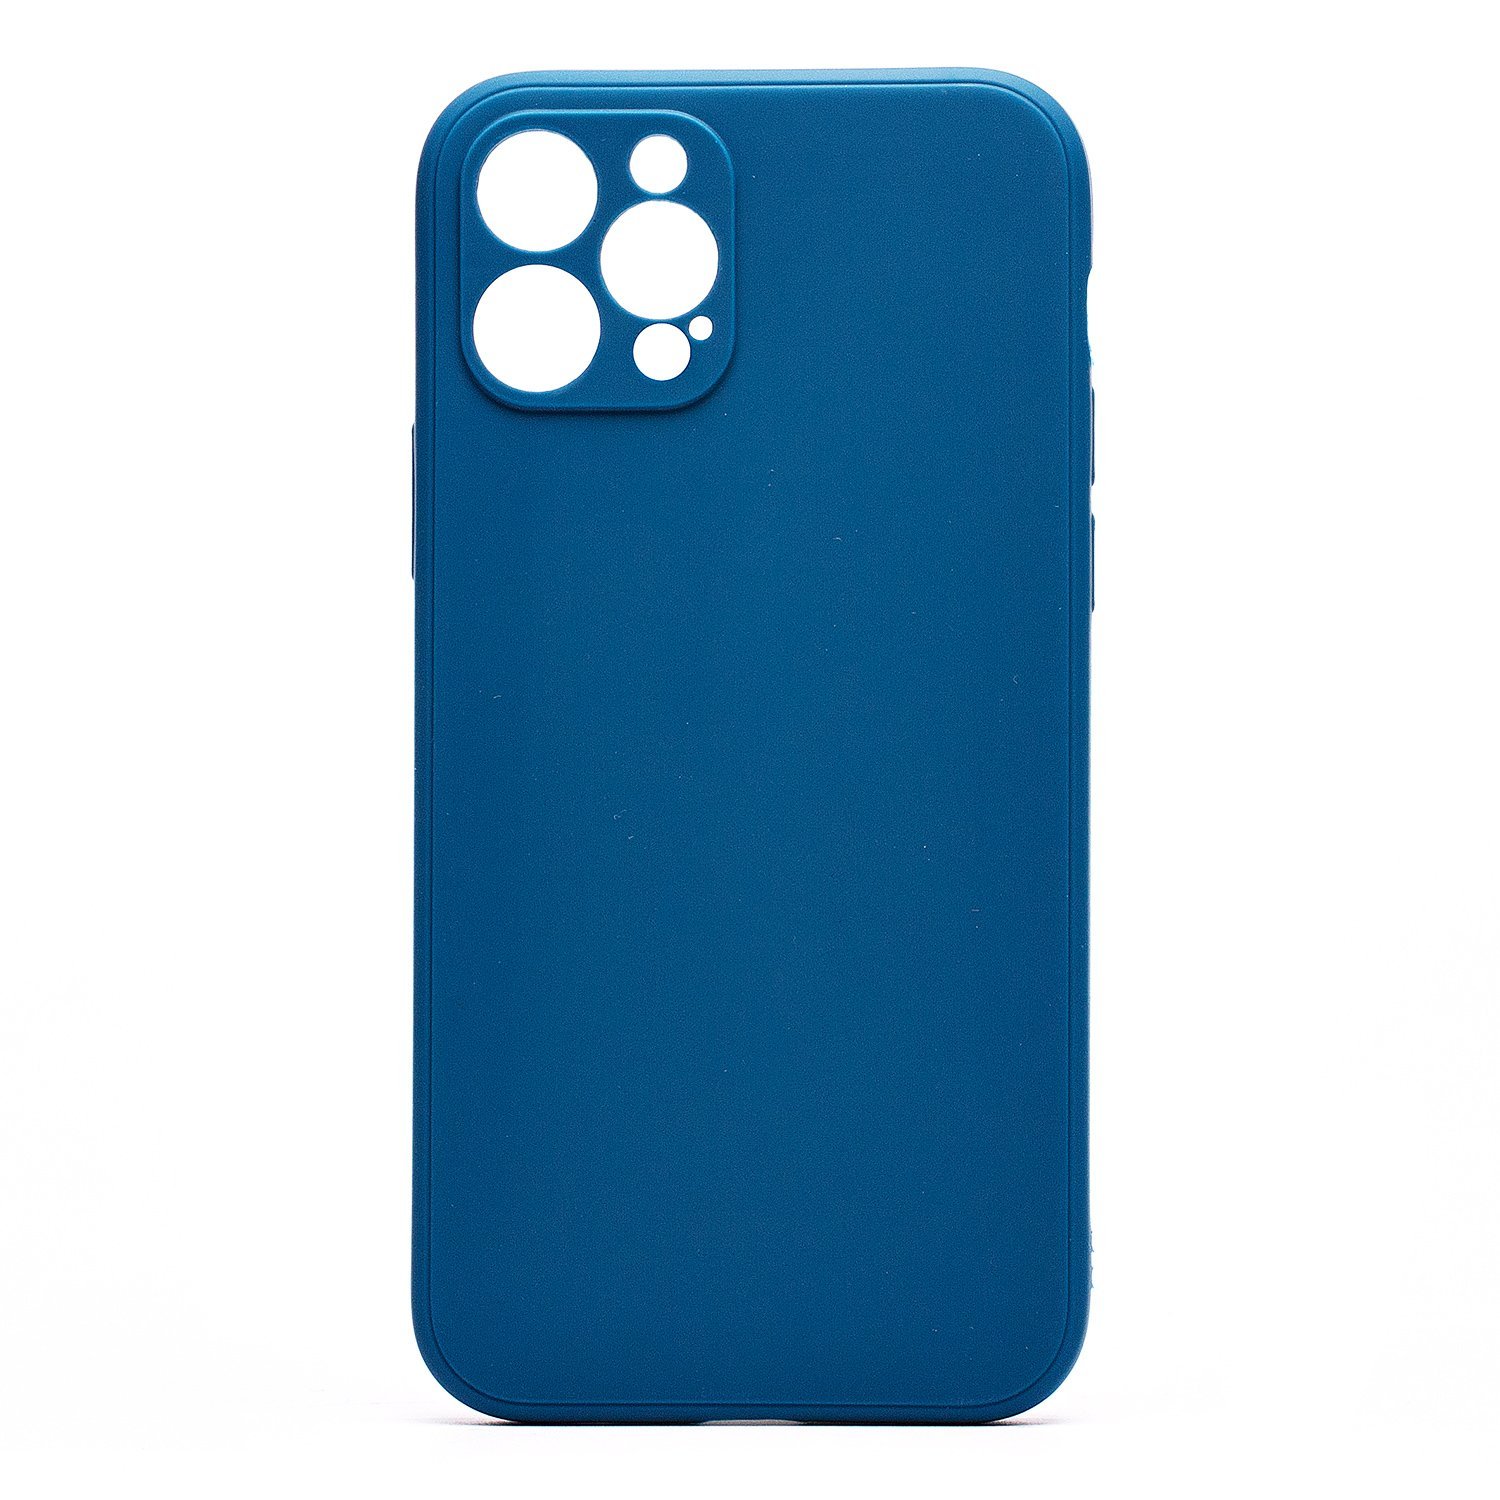 Чехол-накладка Activ Full Original Design для смартфона Apple iPhone 12 Pro, силикон, синий (207809)